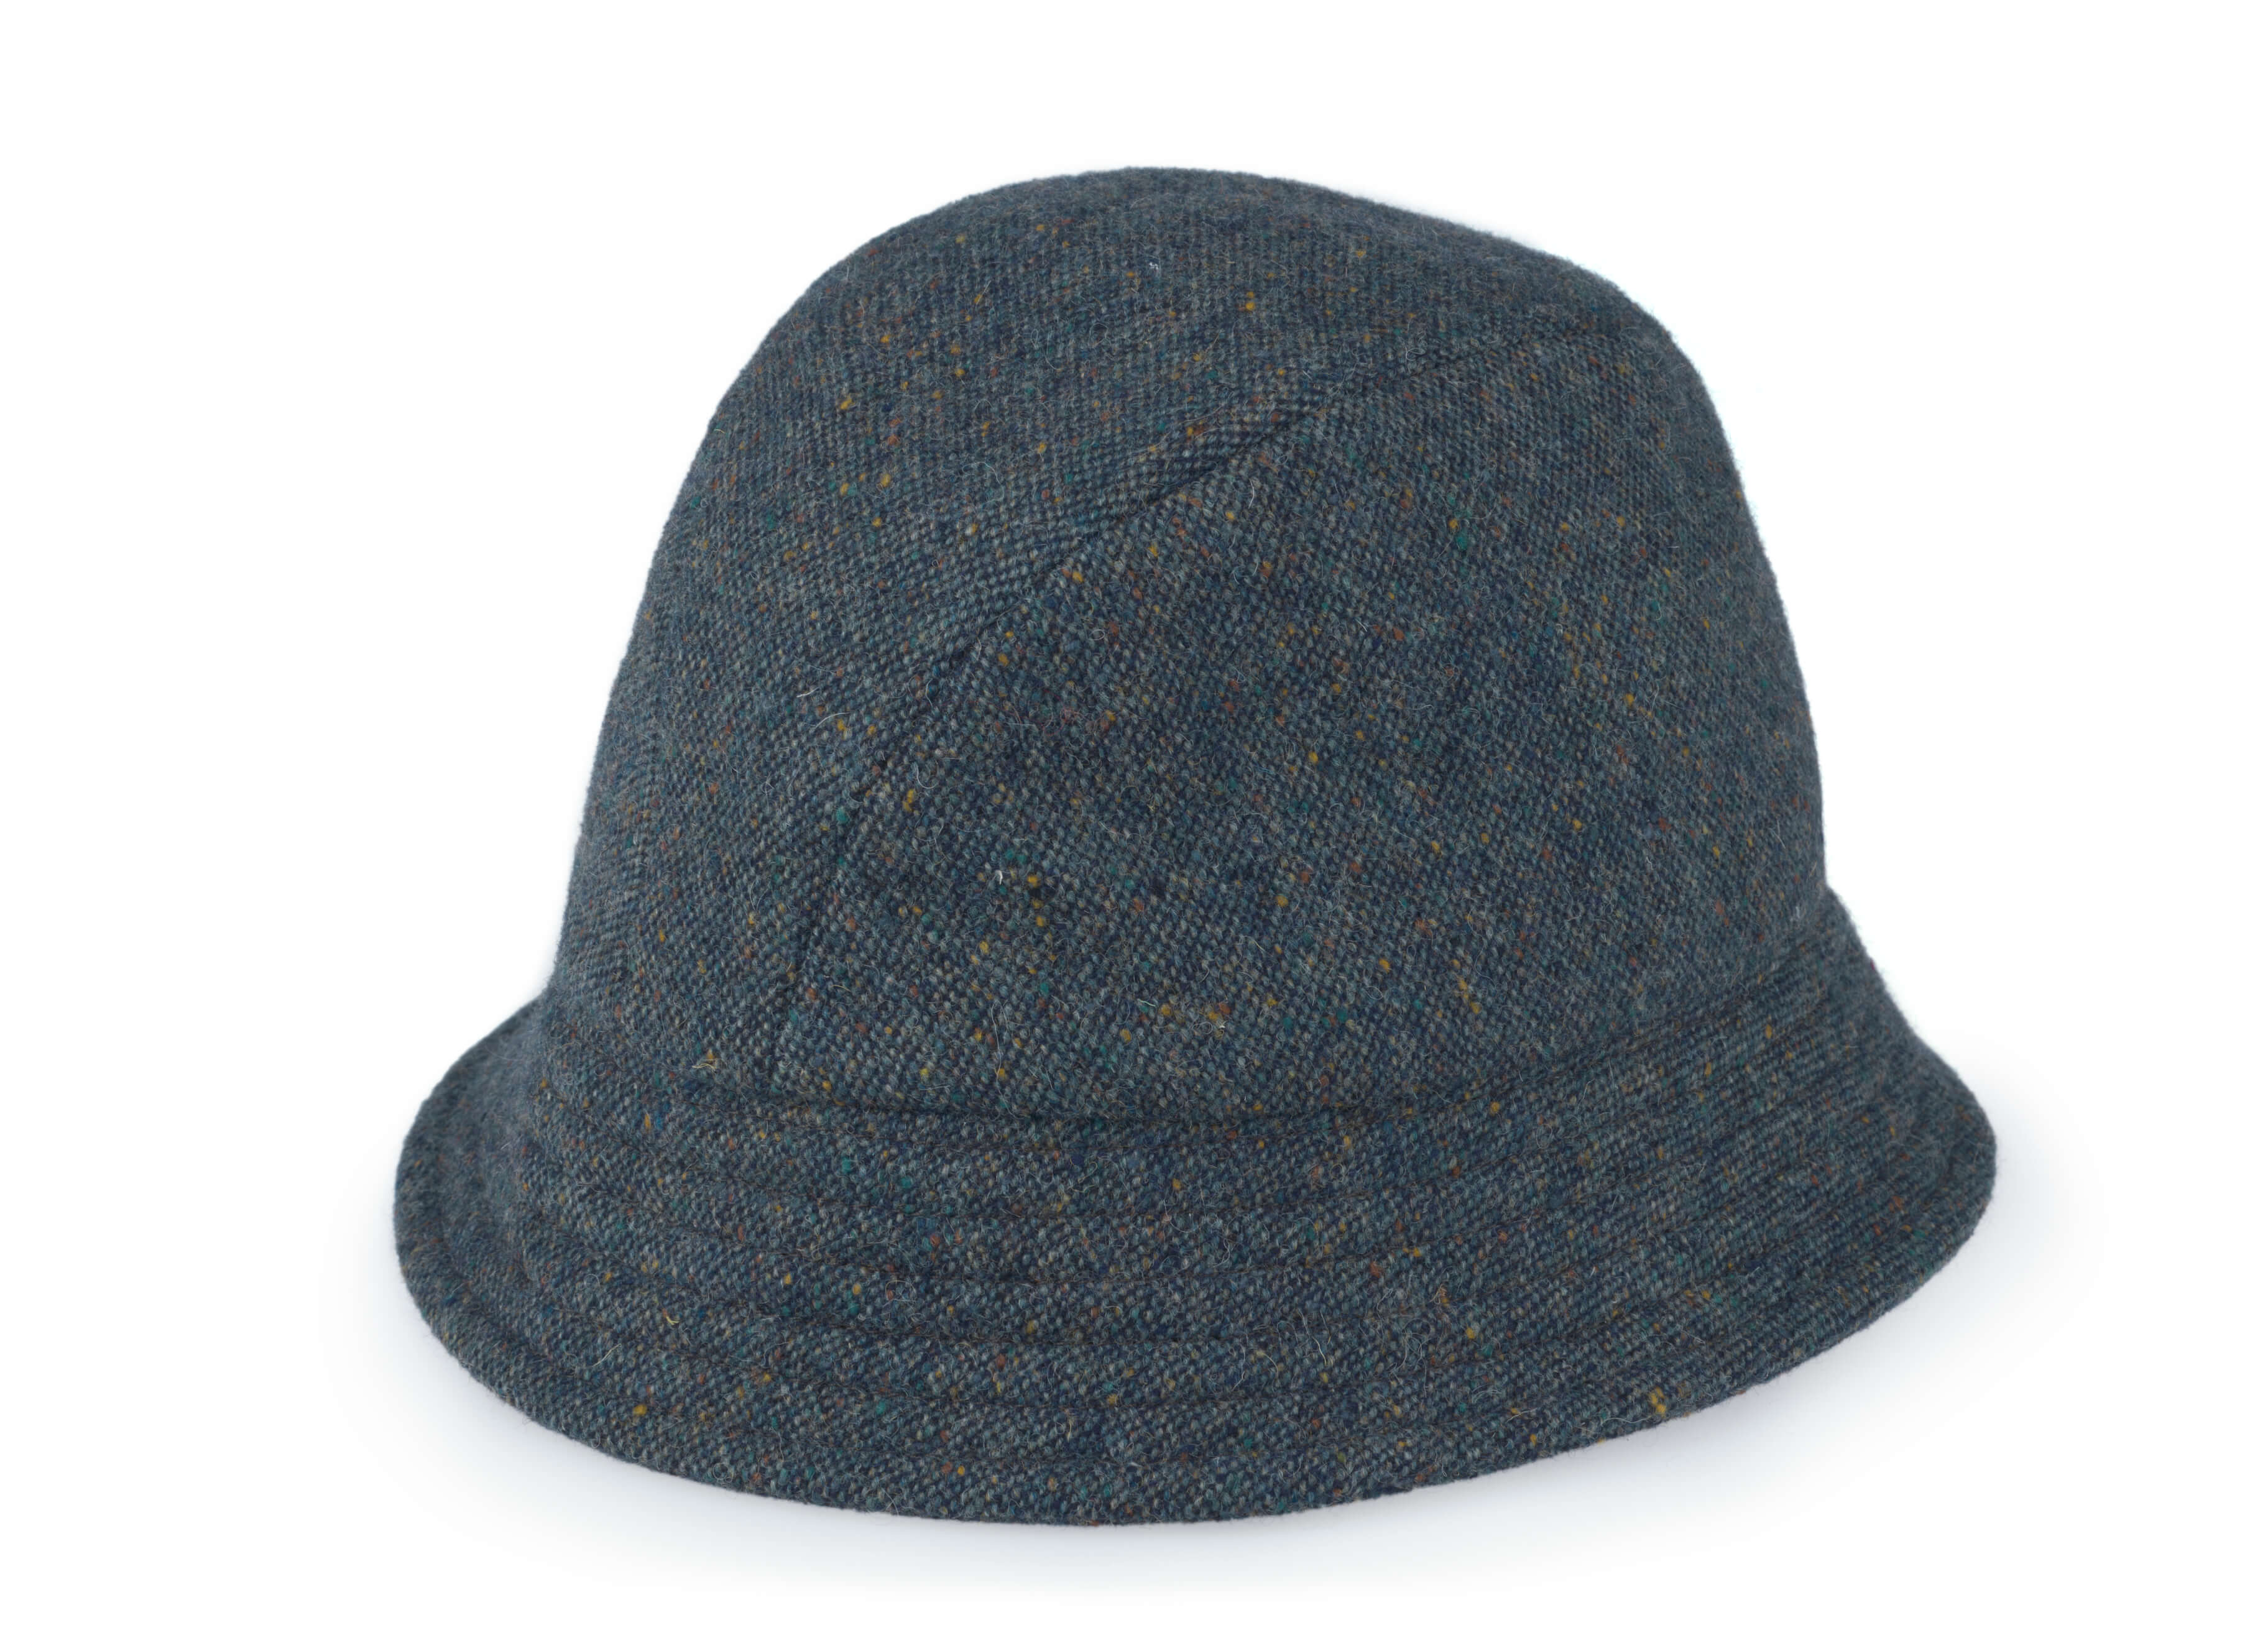 Eske Travel Hat Tweed